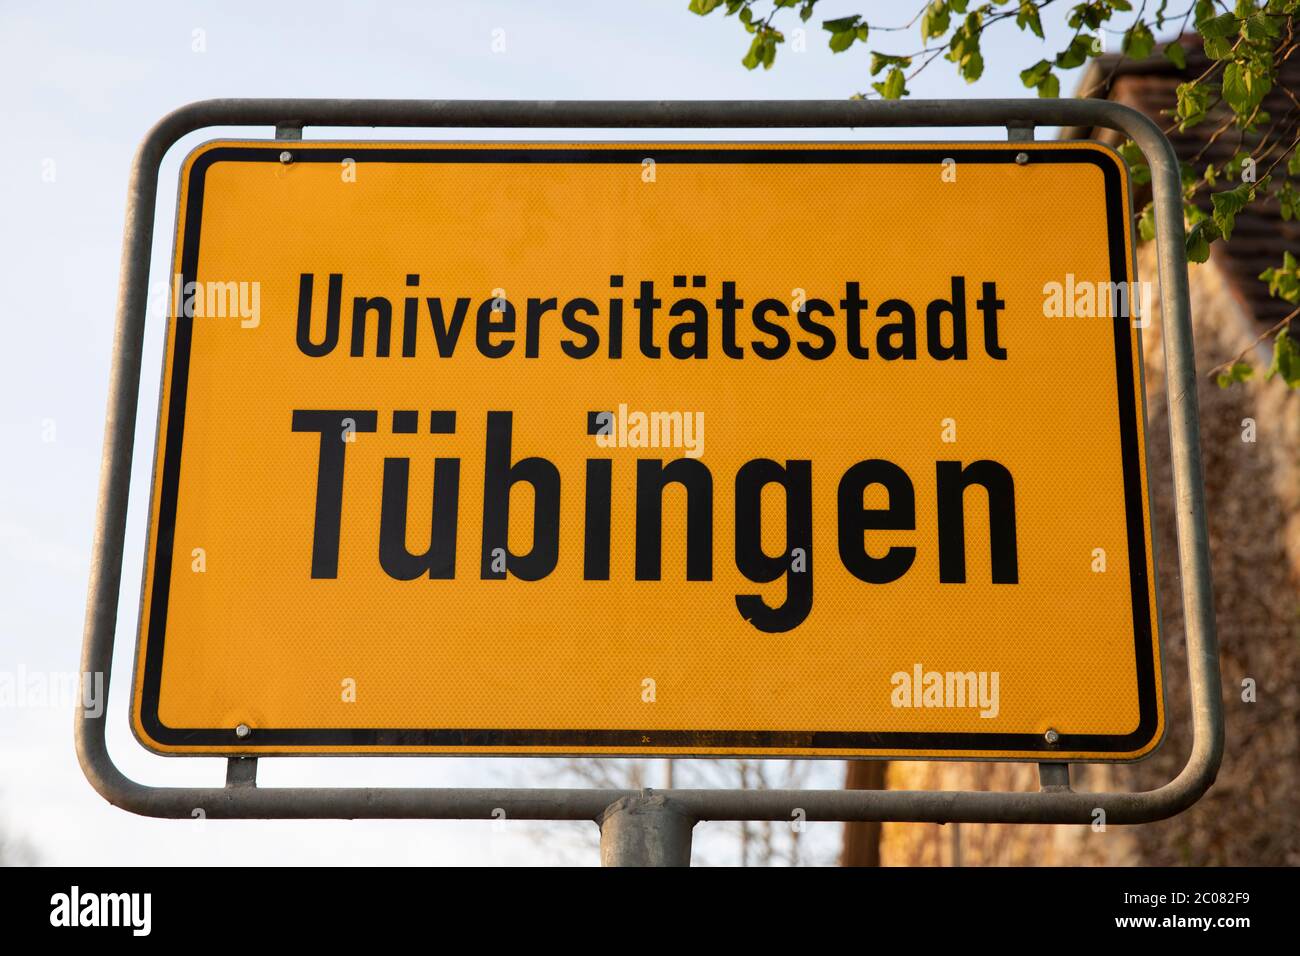 Ortseingsschild der Universitätsstadt Tübingen. Tübingen, 19.04.2020 Stock Photo